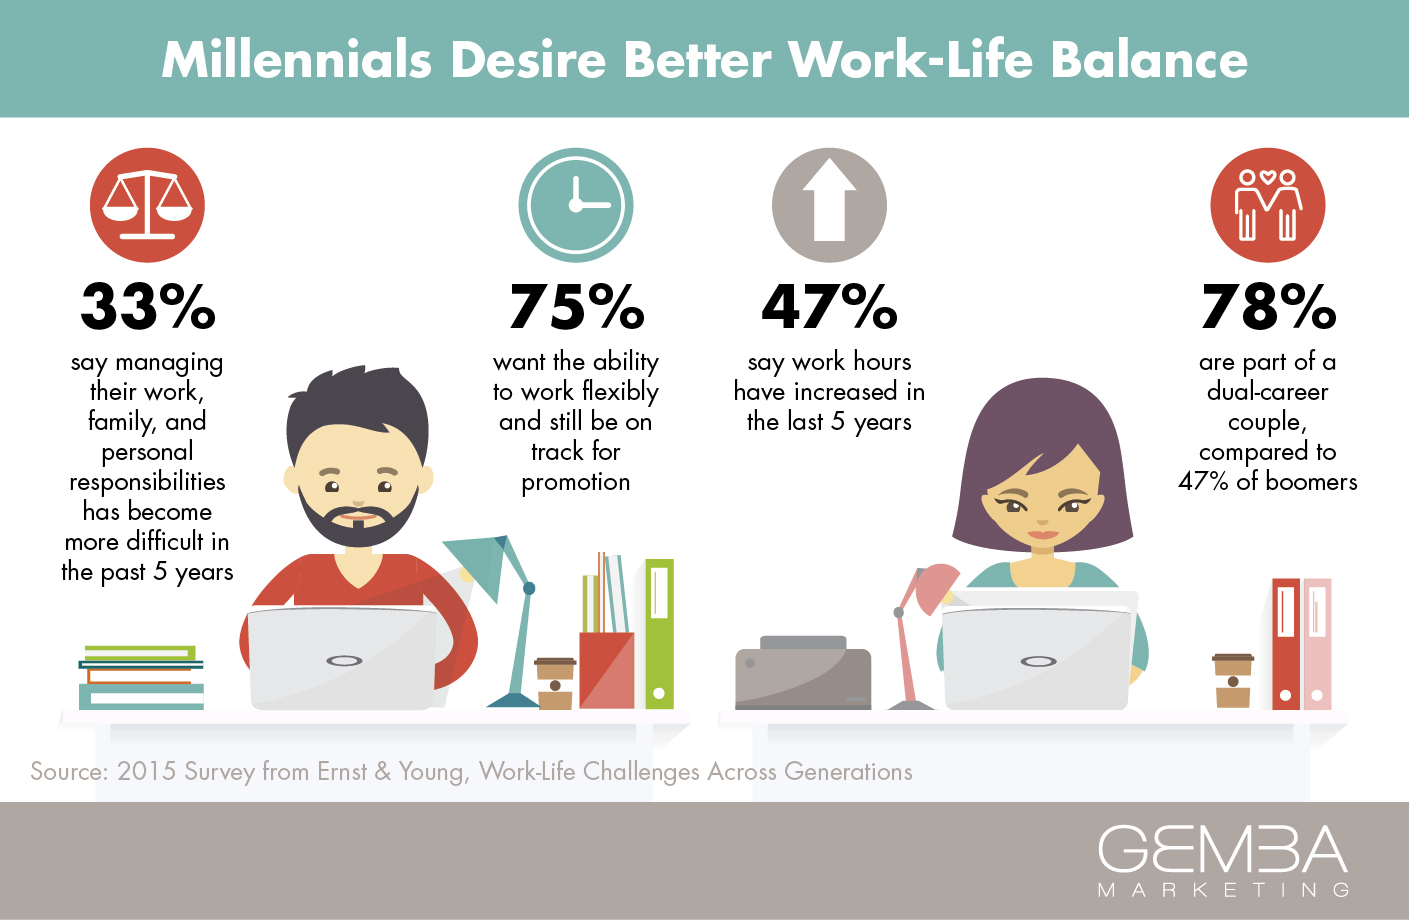 Work part of life. Work-Life Balance. Work Life баланс что это. Баланс между работой и отдыхом. Life and work.